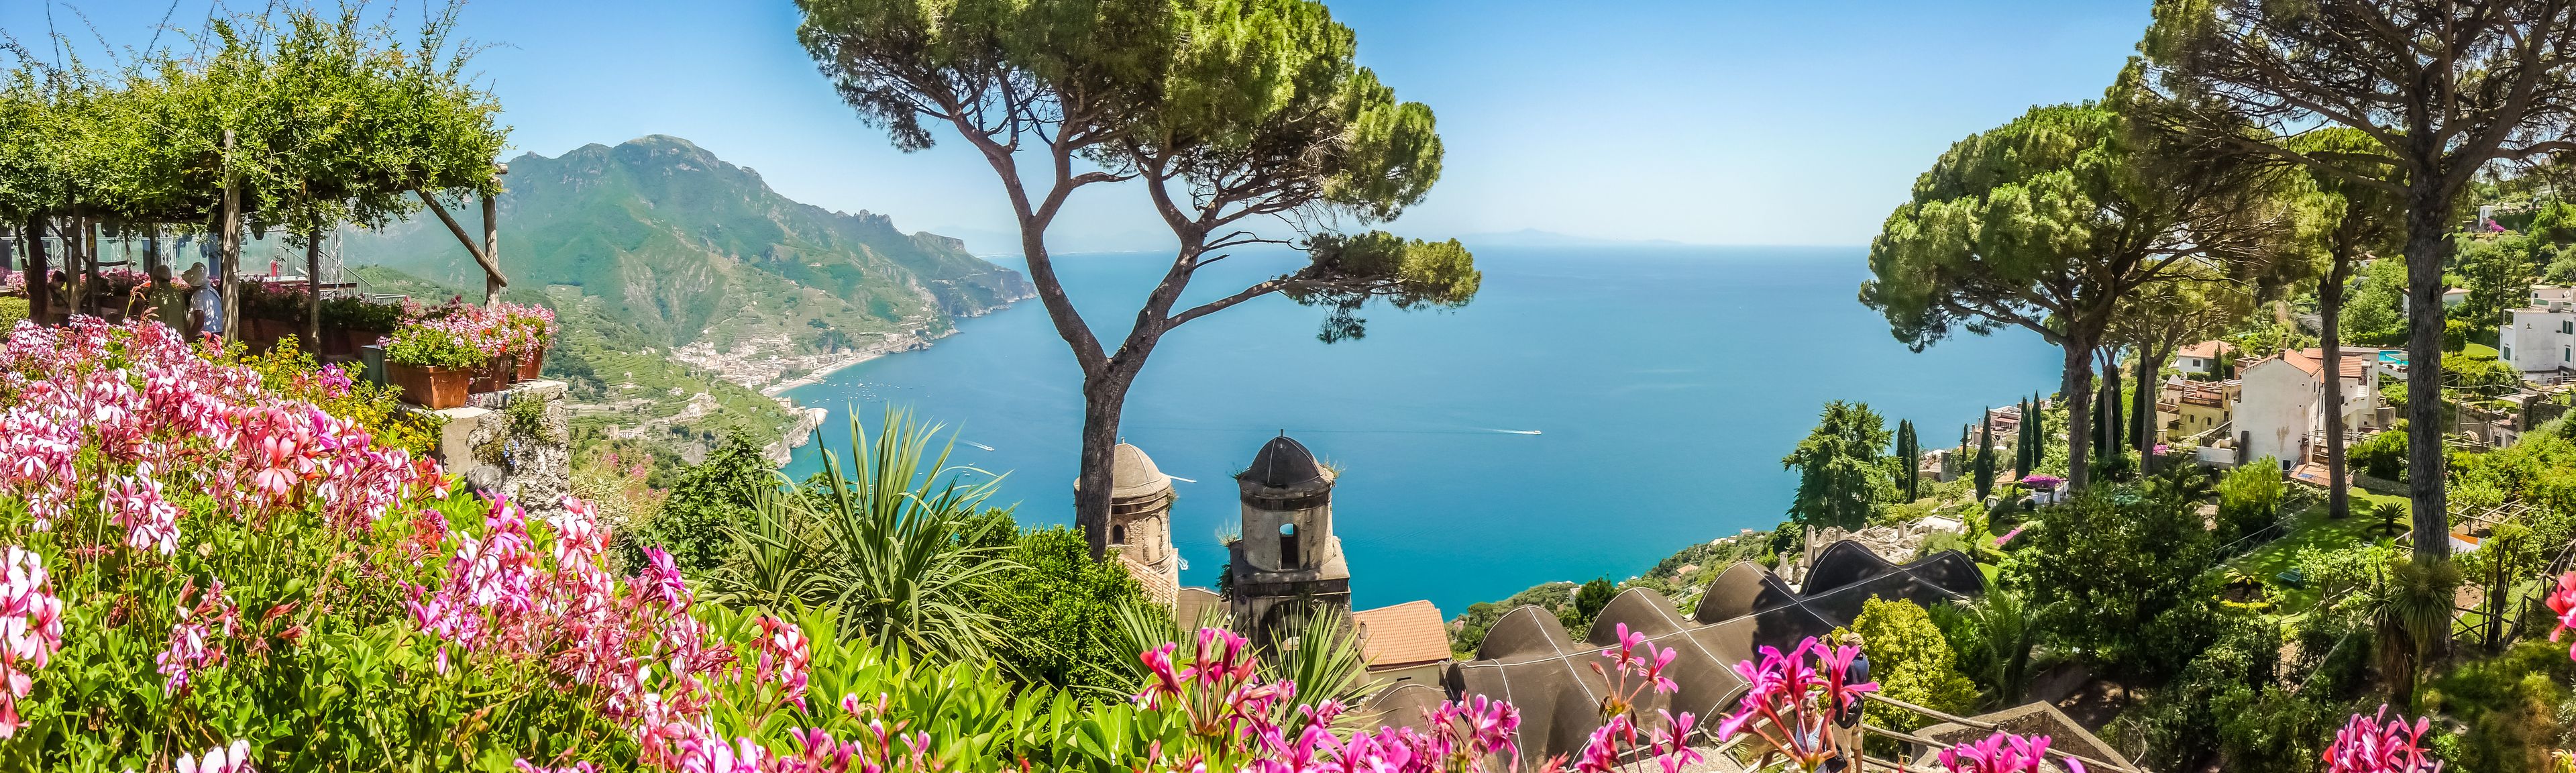 Amalfi Küste in Italien